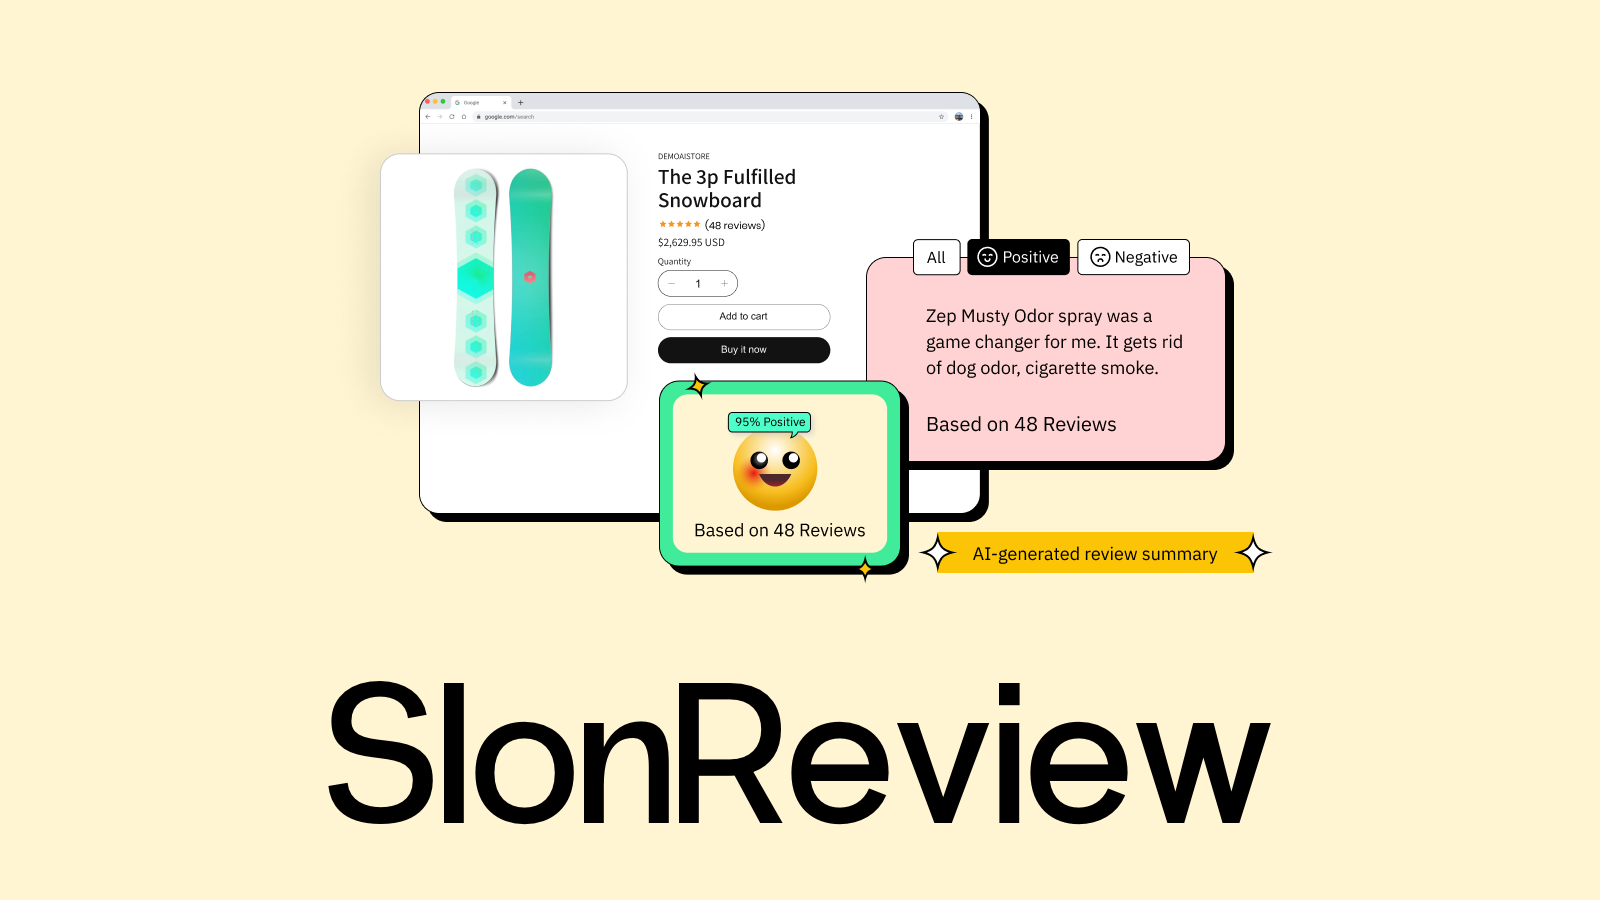 Slon Review Application Feature